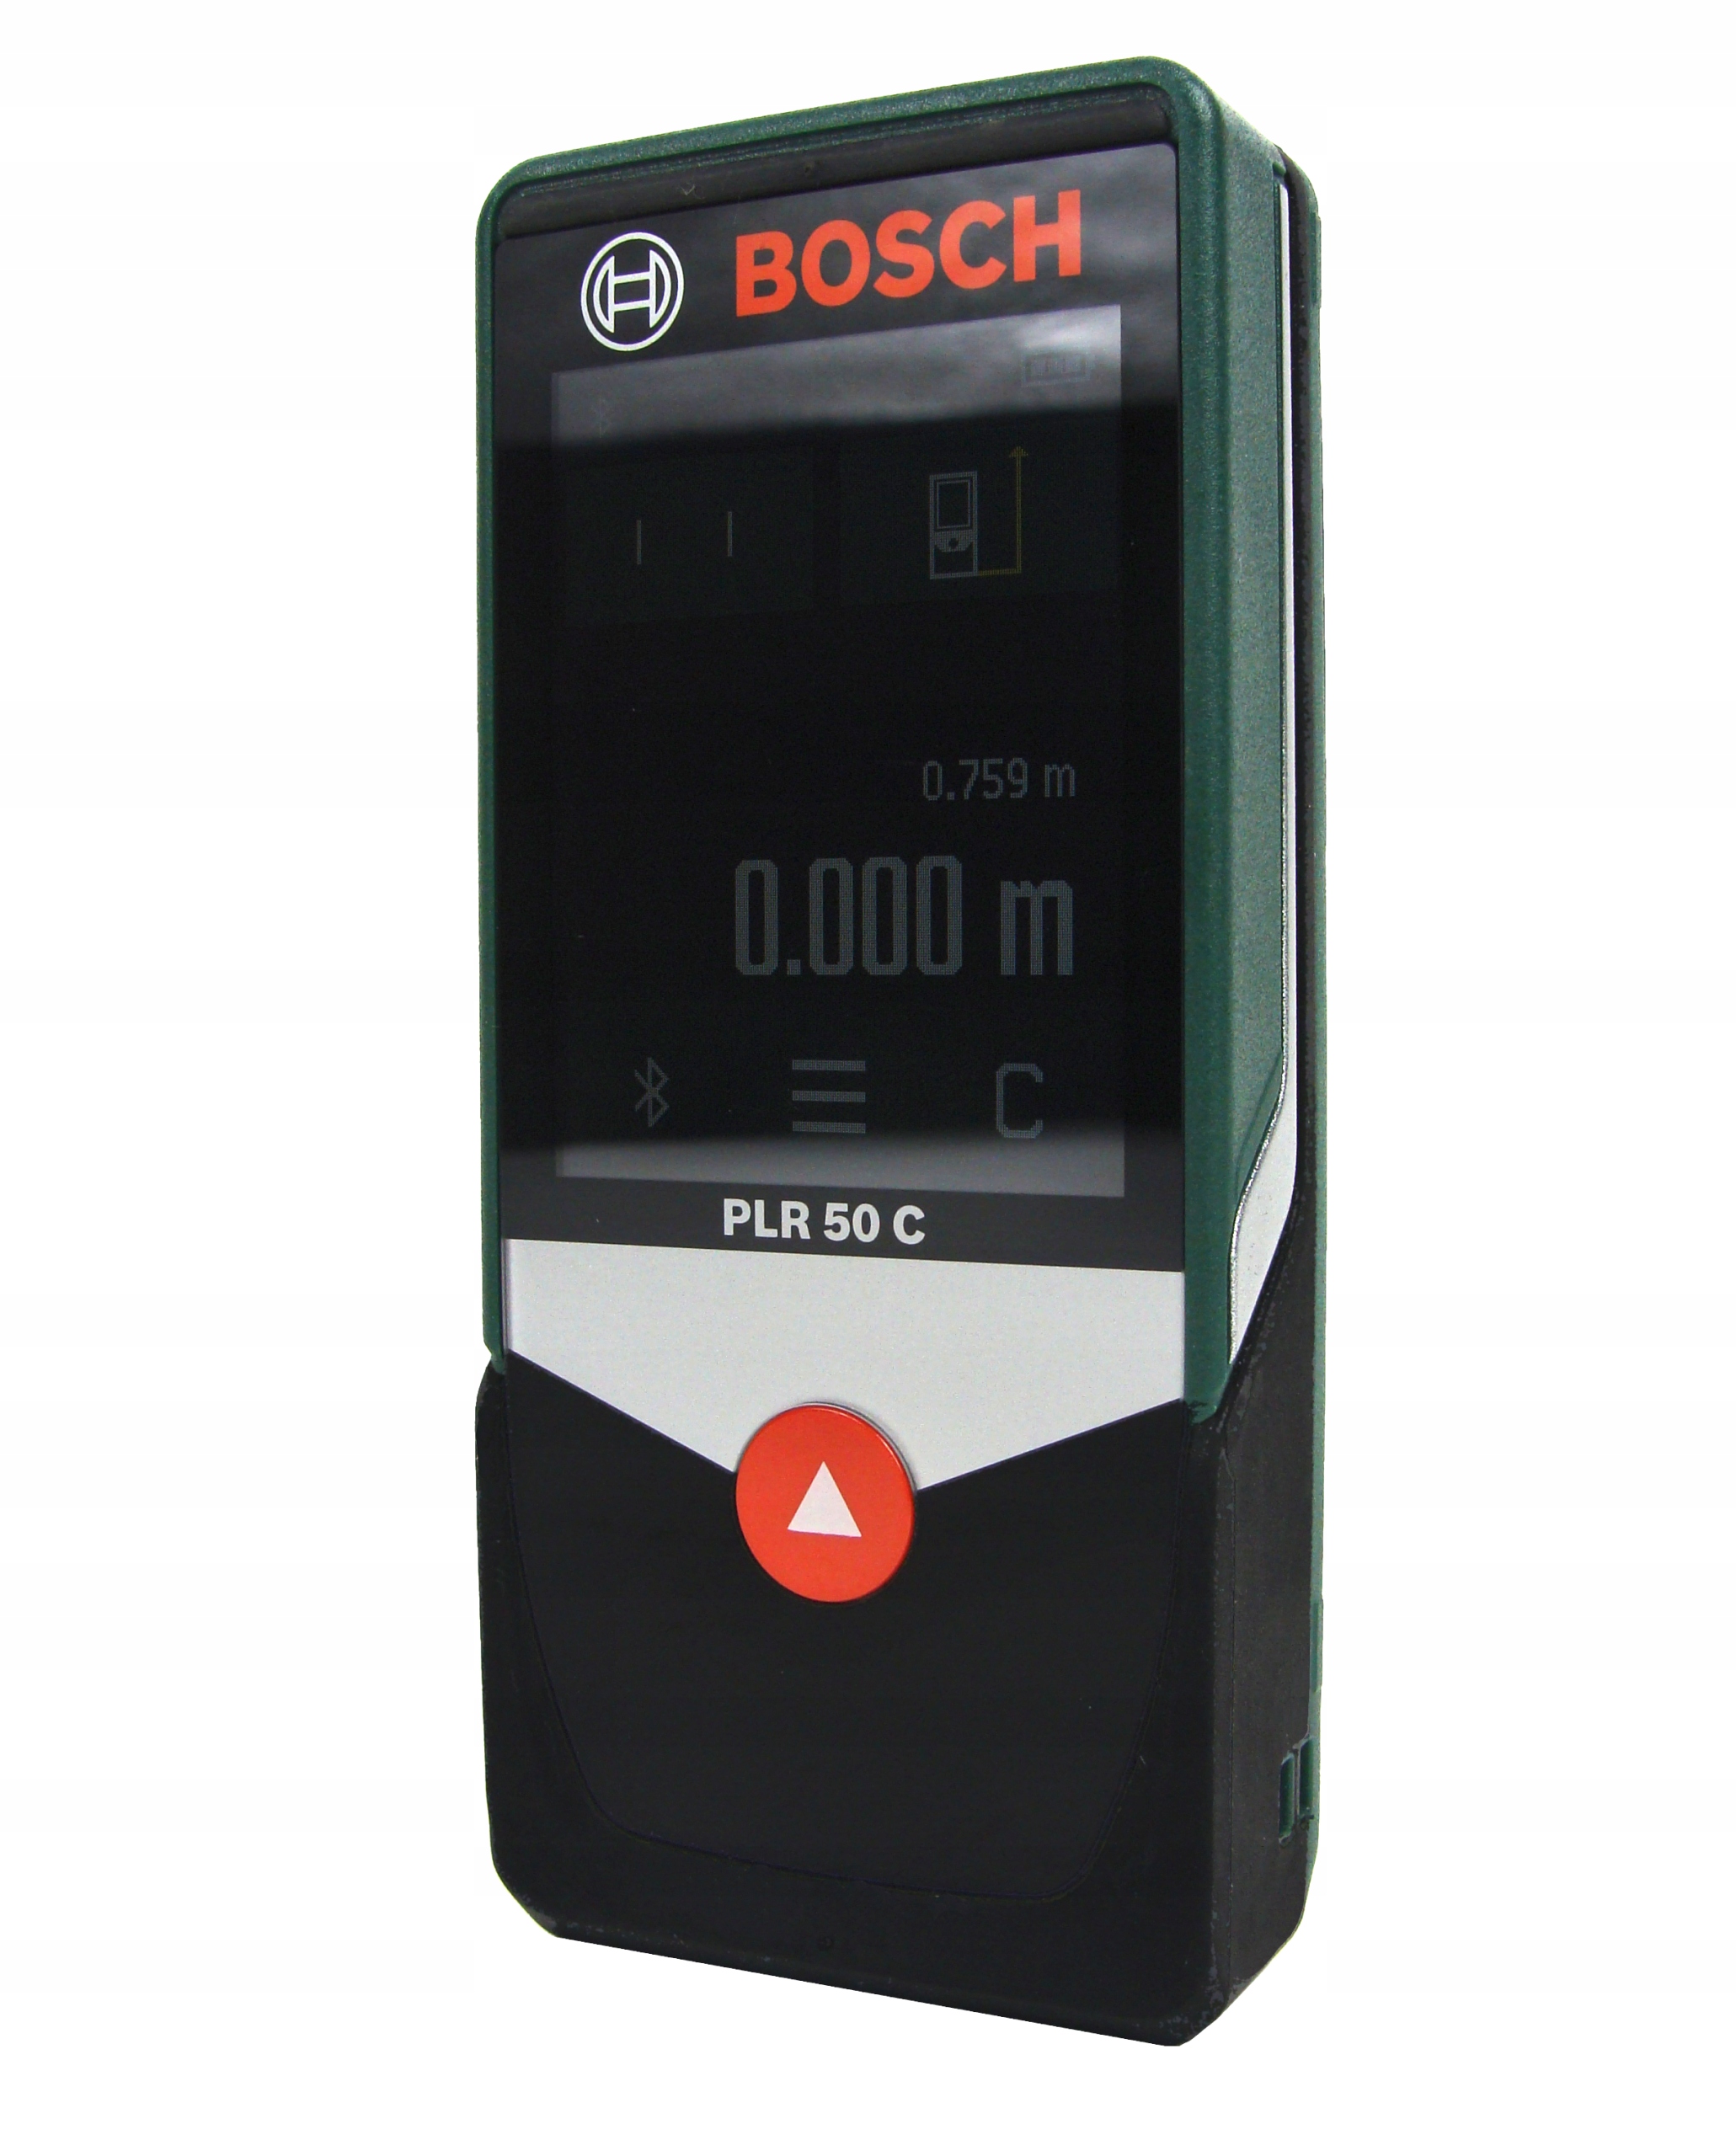 Bosch 50 c. Лазерный дальномер Bosch PLR 50 C. Дальномер Bosch PLR 50 C 0603672220. Лазерный дальномер PLR 50 C бош 0603672220. Bosch Рулетка PLR 50.